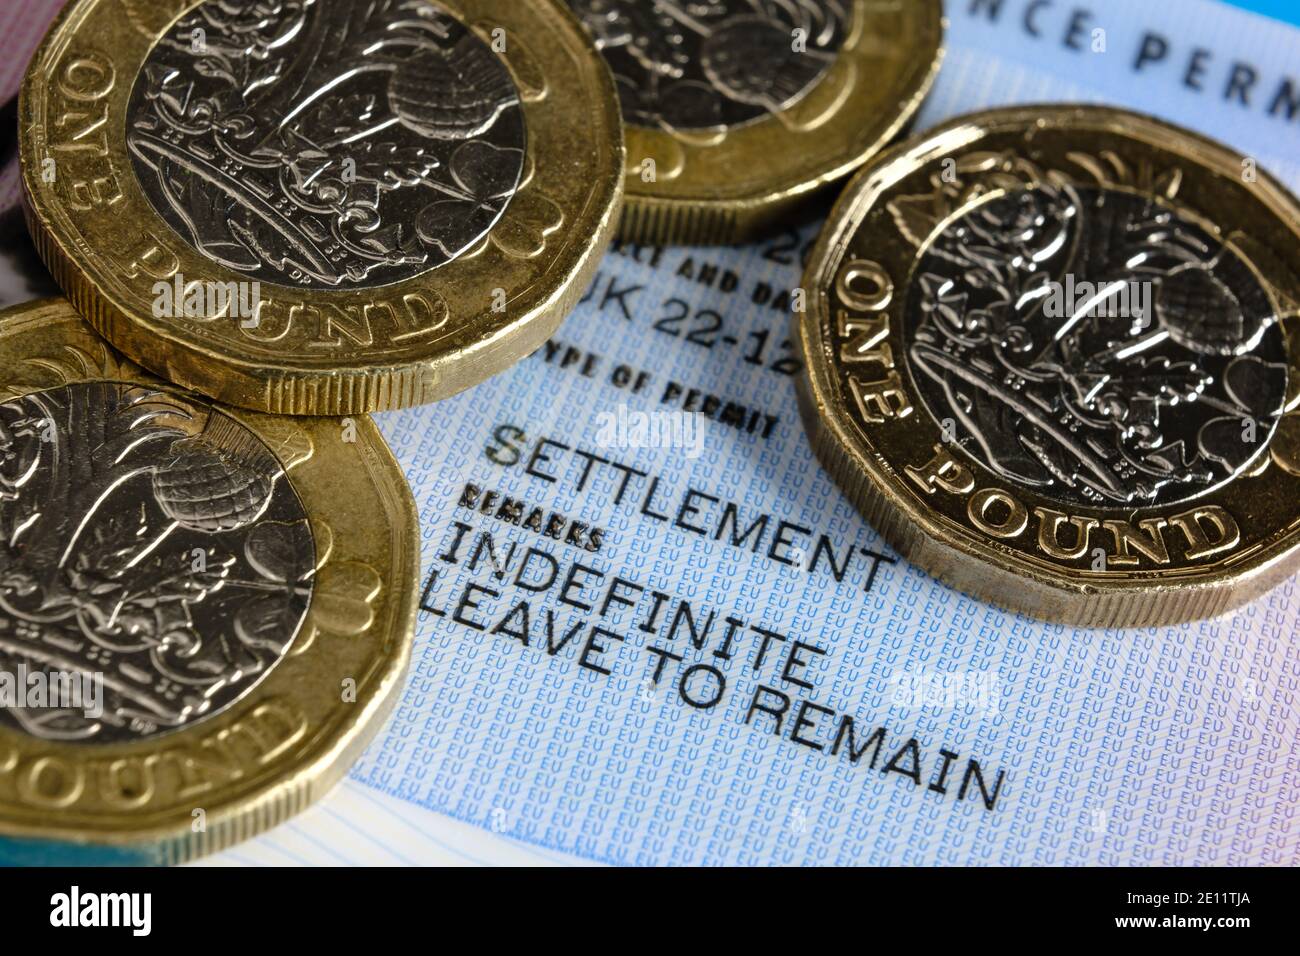 Stafford, Vereinigtes Königreich - 3. Januar 2021: In Großbritannien ausgestellte Visa-Karten und Pfund-Münzen der EU mit unbefristter Aufenthaltserlaubnis (ILR). Konzept für hohe Gebühren für Stockfoto